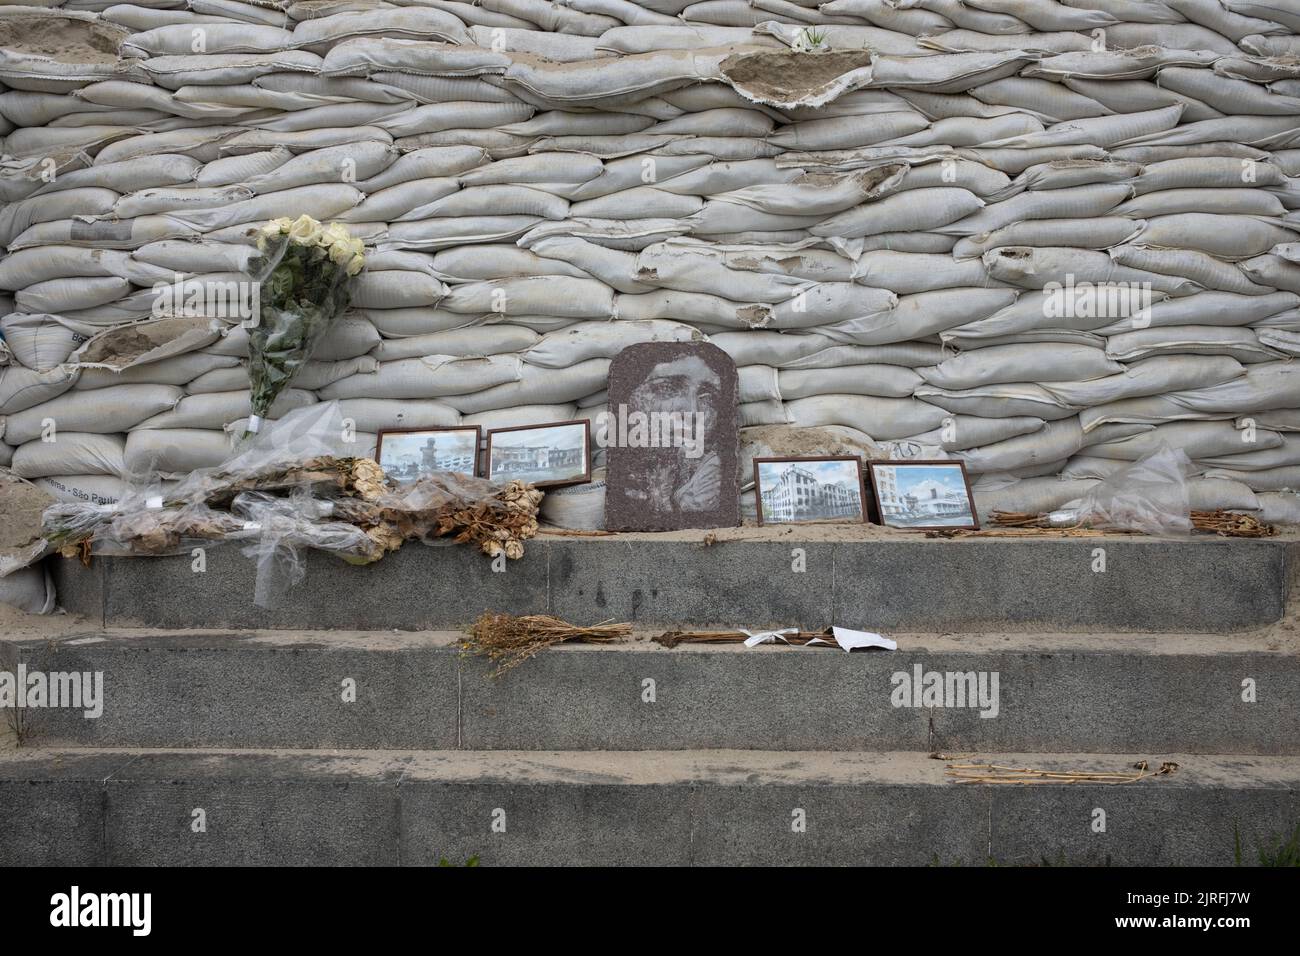 Monumento coperto di sacchi di sabbia per la protezione, durante la guerra causata dall'invasione russa, a Kyiv, Ucraina, 19 luglio 2022. Foto Stock